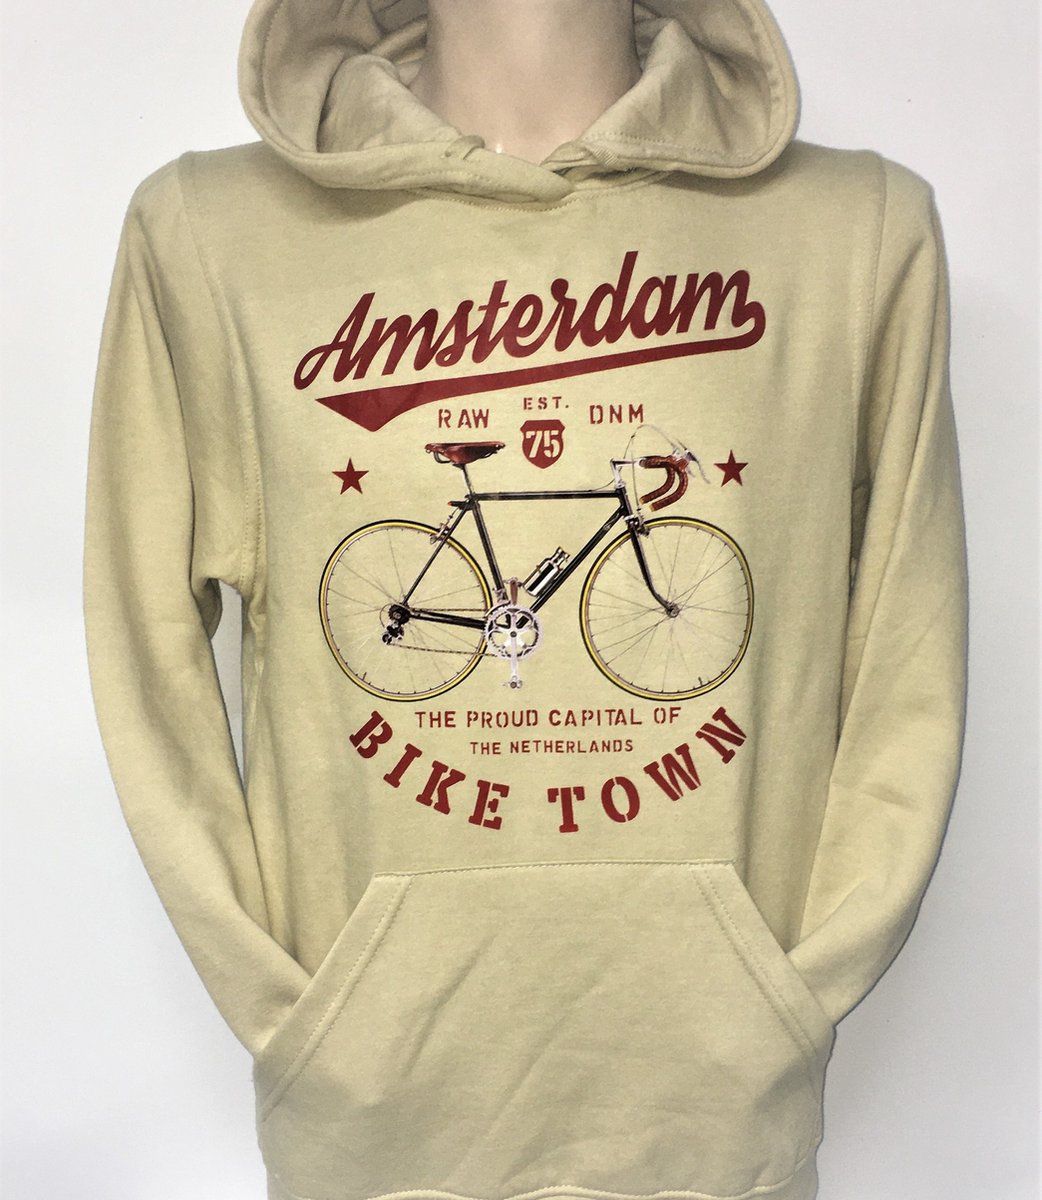 Hooded Sweater - Met Trekkoord - Capuchon - Chill - Trui - Vest - met capuchon - Outdoor - Fiets - Raw - Denim - Race Fiets - Capital Amsterdam - Bike Town - Race Fiets Amsterdam - Zand - Beige - Maat S